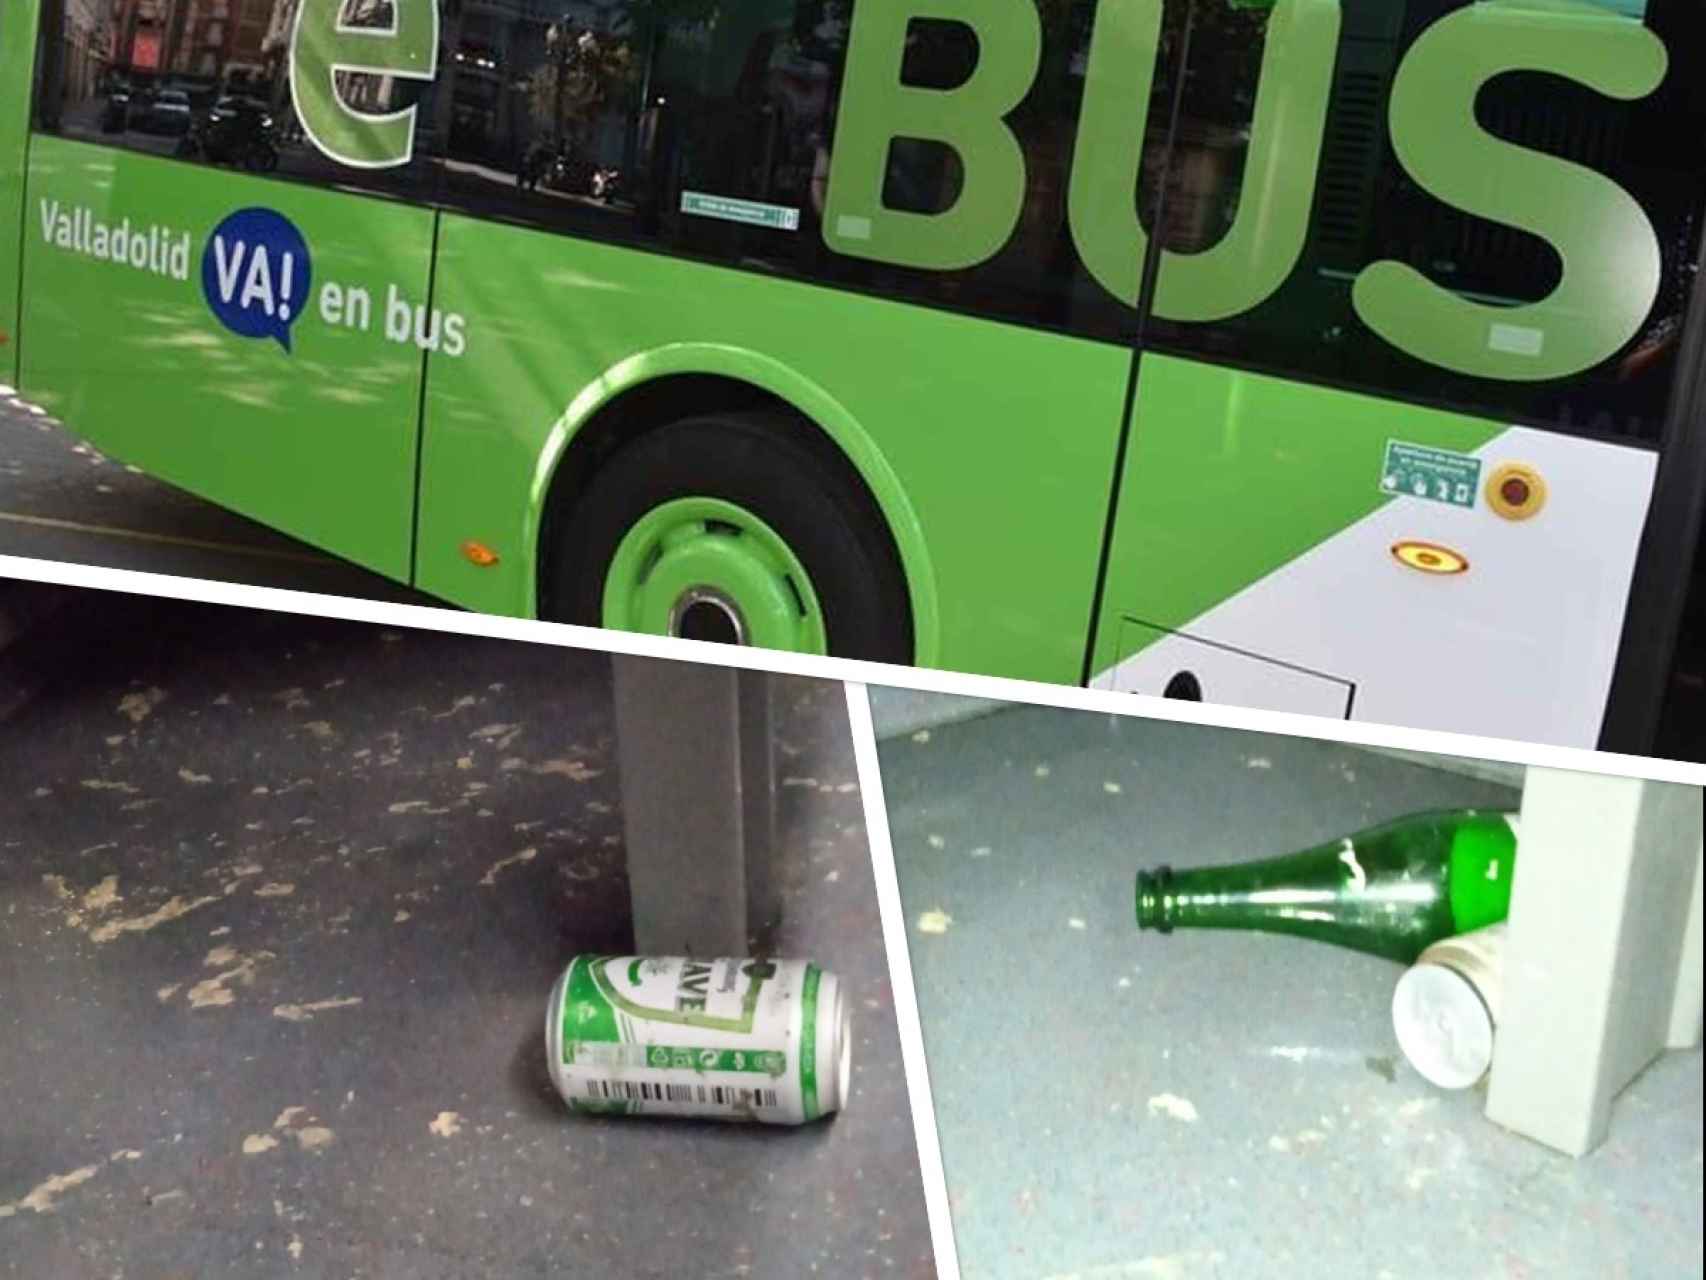 Imagen de un bus Búho con restos de bebida en su interior